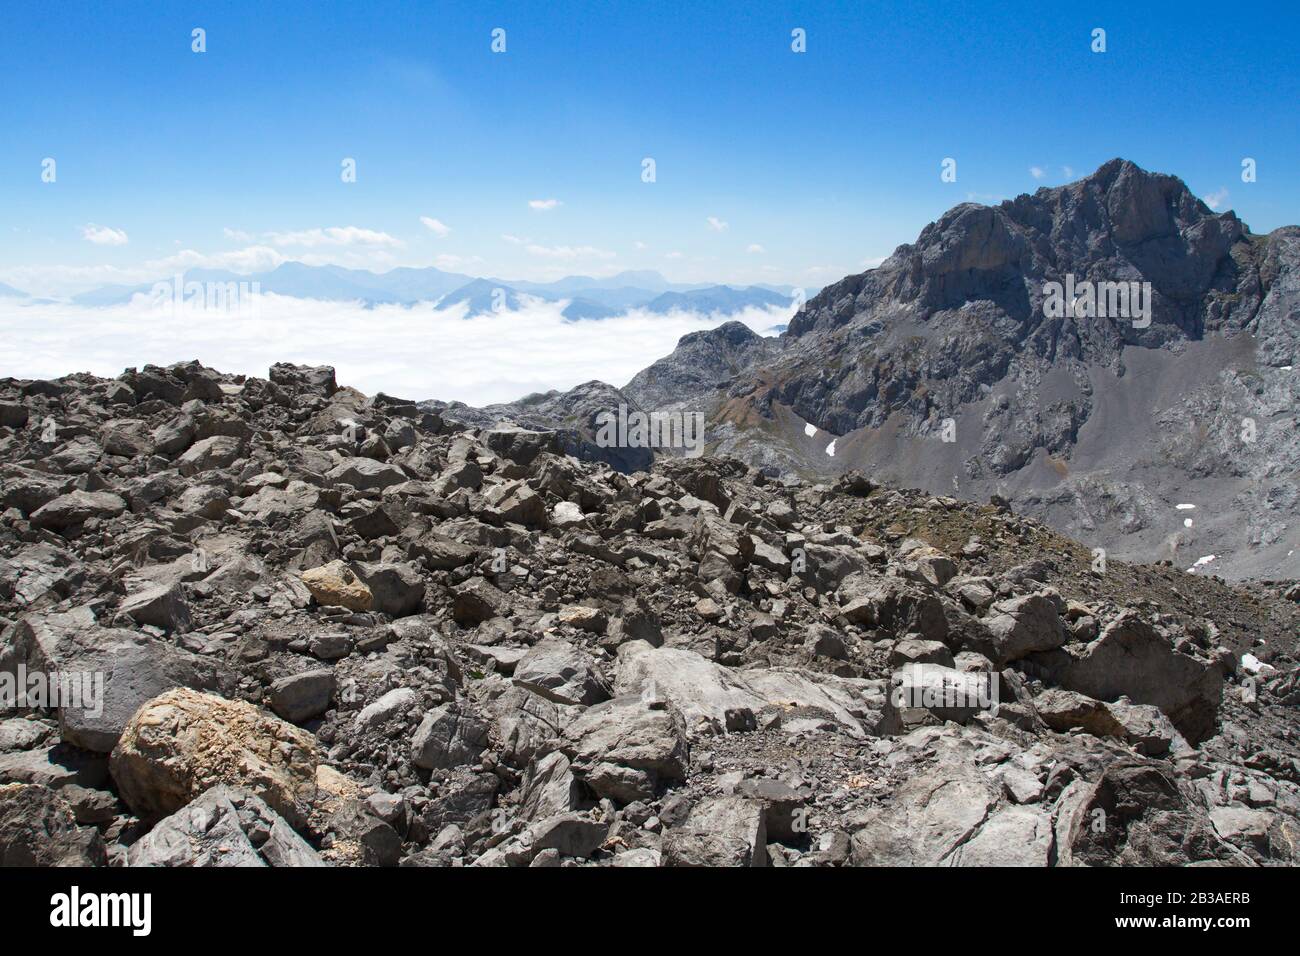 Picos De Europa, Spagna; 04 Agosto 2015. Il Parco Nazionale Picos de Europa si trova nei Monti Cantabrici, tra le province delle Asturie, le Foto Stock